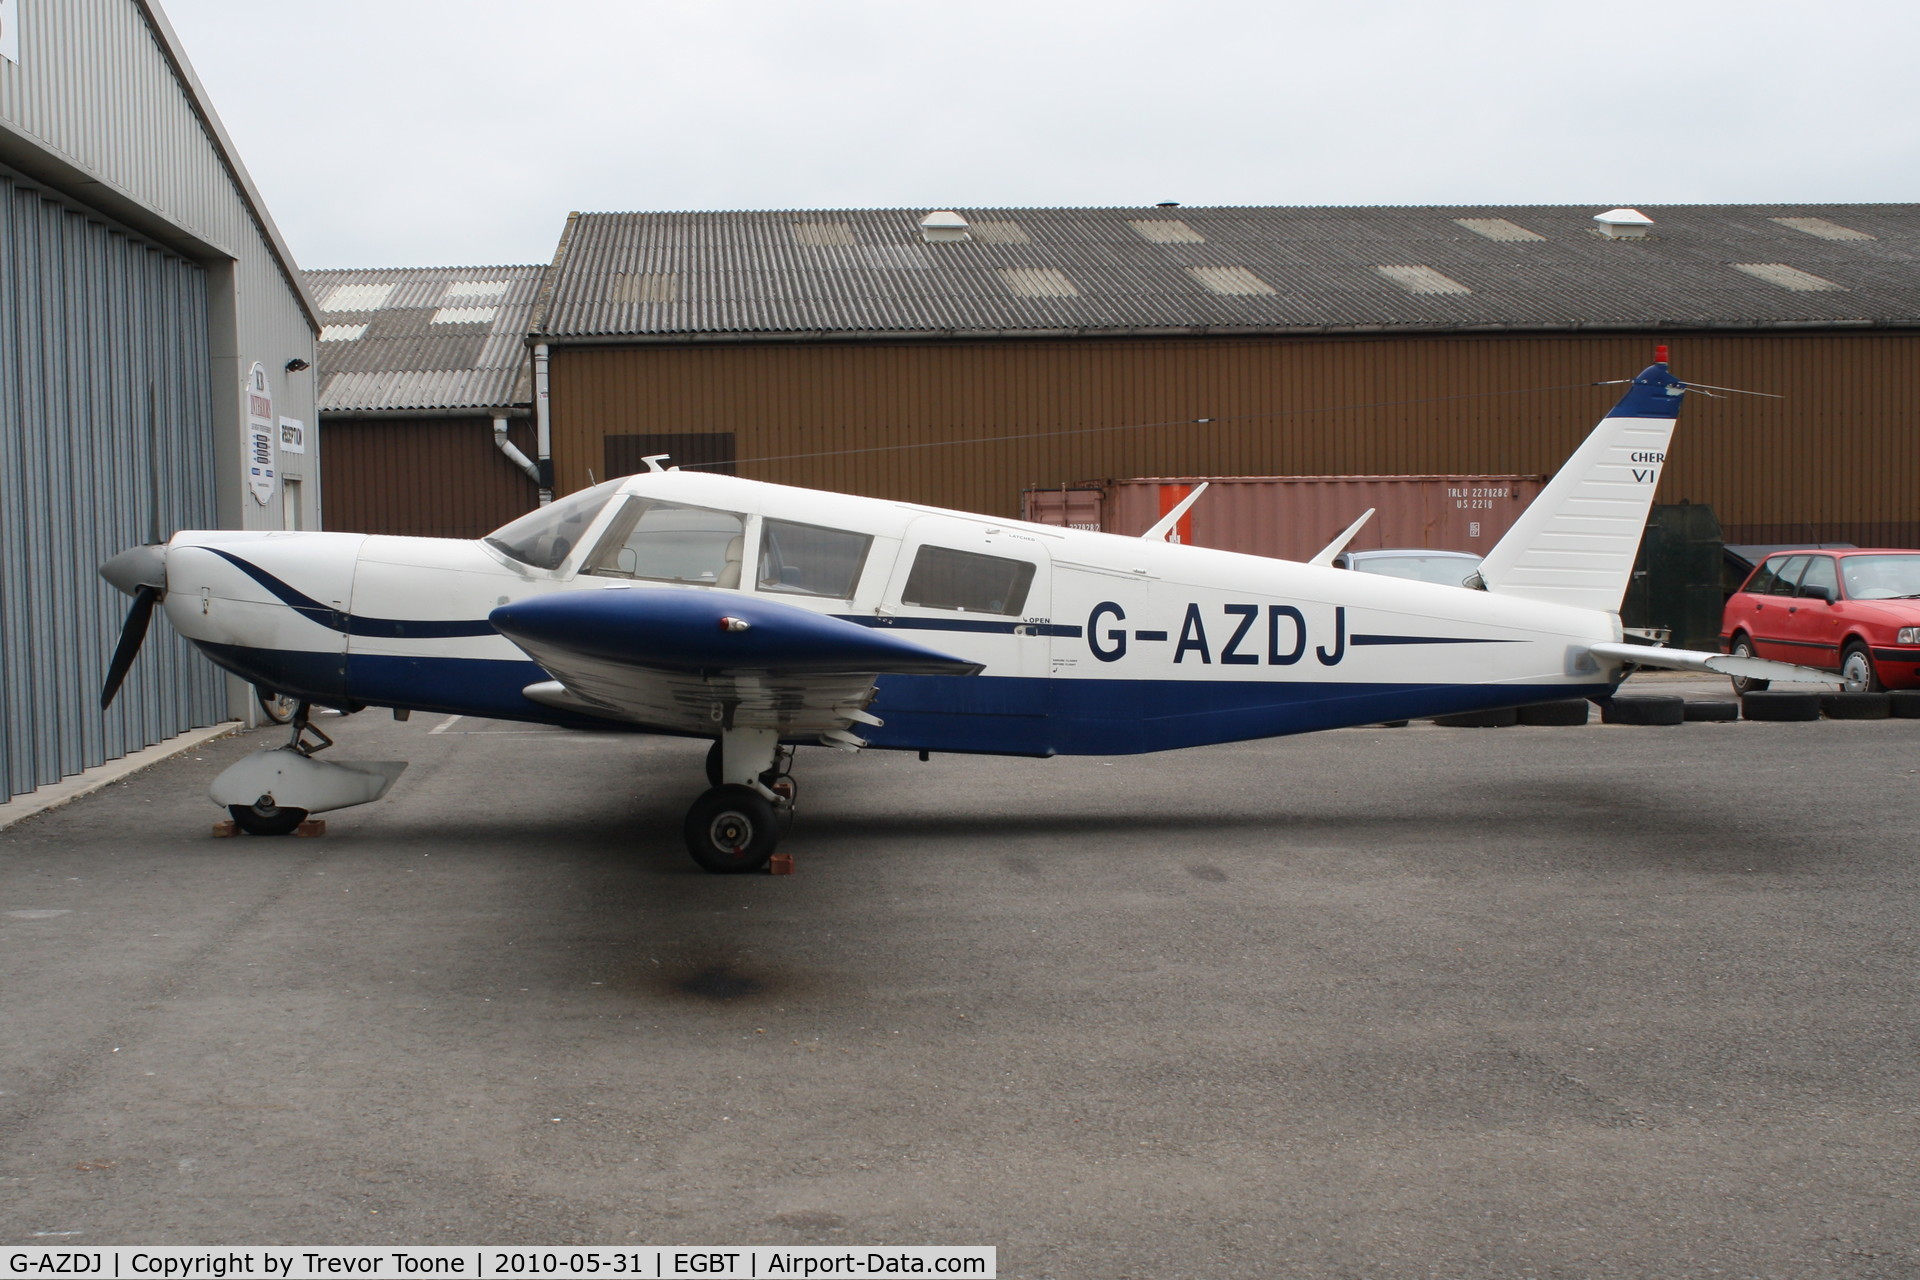 G-AZDJ, 1971 Piper PA-32-300 D Cherokee Six C/N 32-7140068, PA-32-300, c/n: 32-7140068